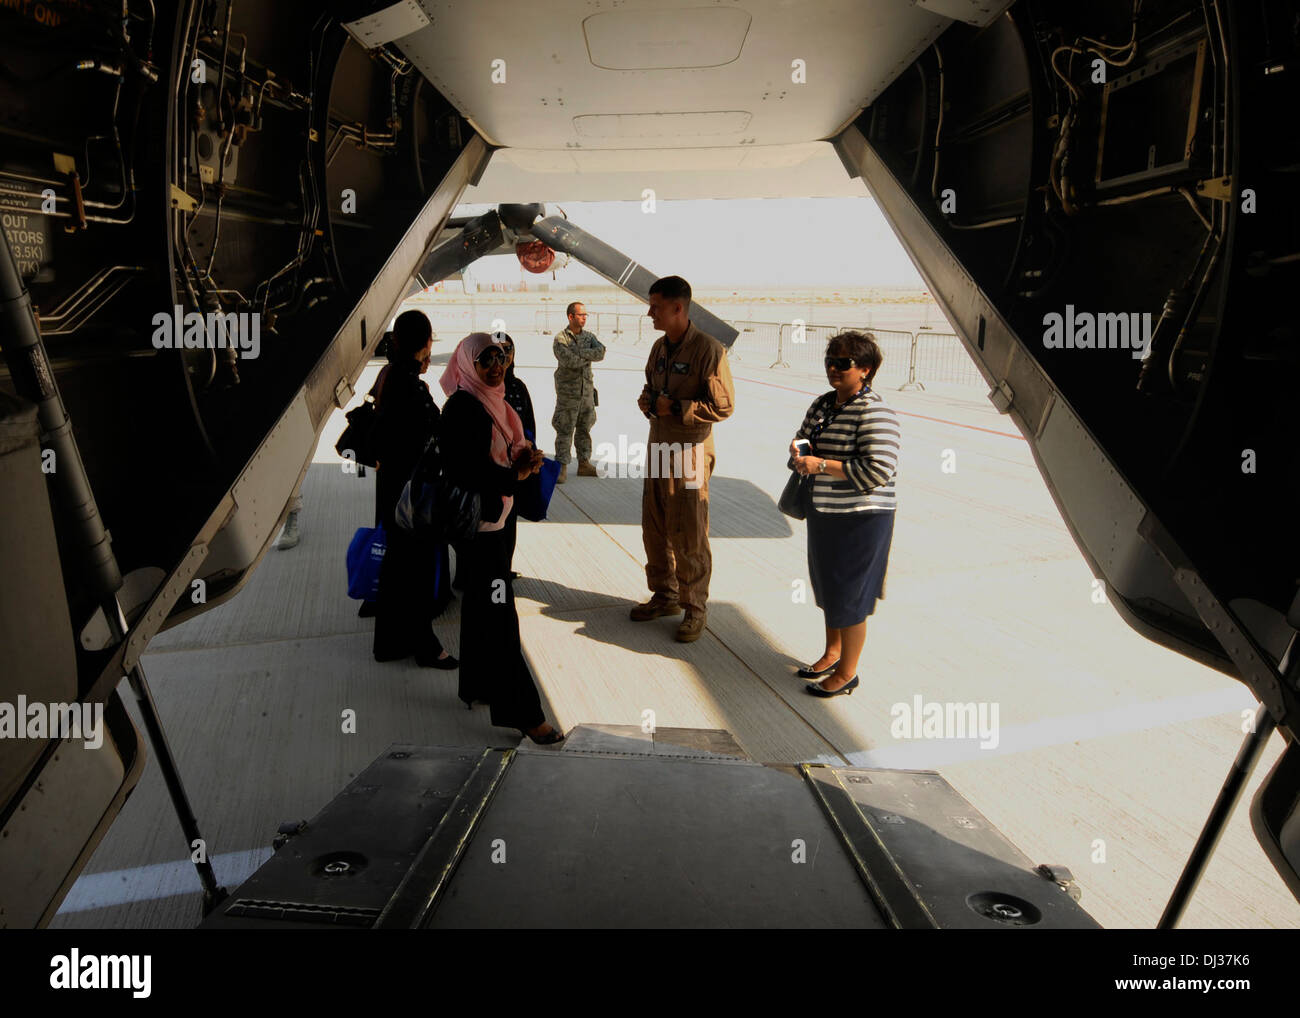 US Marine Corps SGT Mickael Clemann erklärt die Tilt Rotortechnik der MV-22 Osprey Zuschauer während der 2013 Dubai Airshow auf dem Dubai World Central Flughafen in Jebel Ali, 18. November 2013. Clemann ist ein MV-22 Crewchief VMM-166, 1 zugeordnet Stockfoto